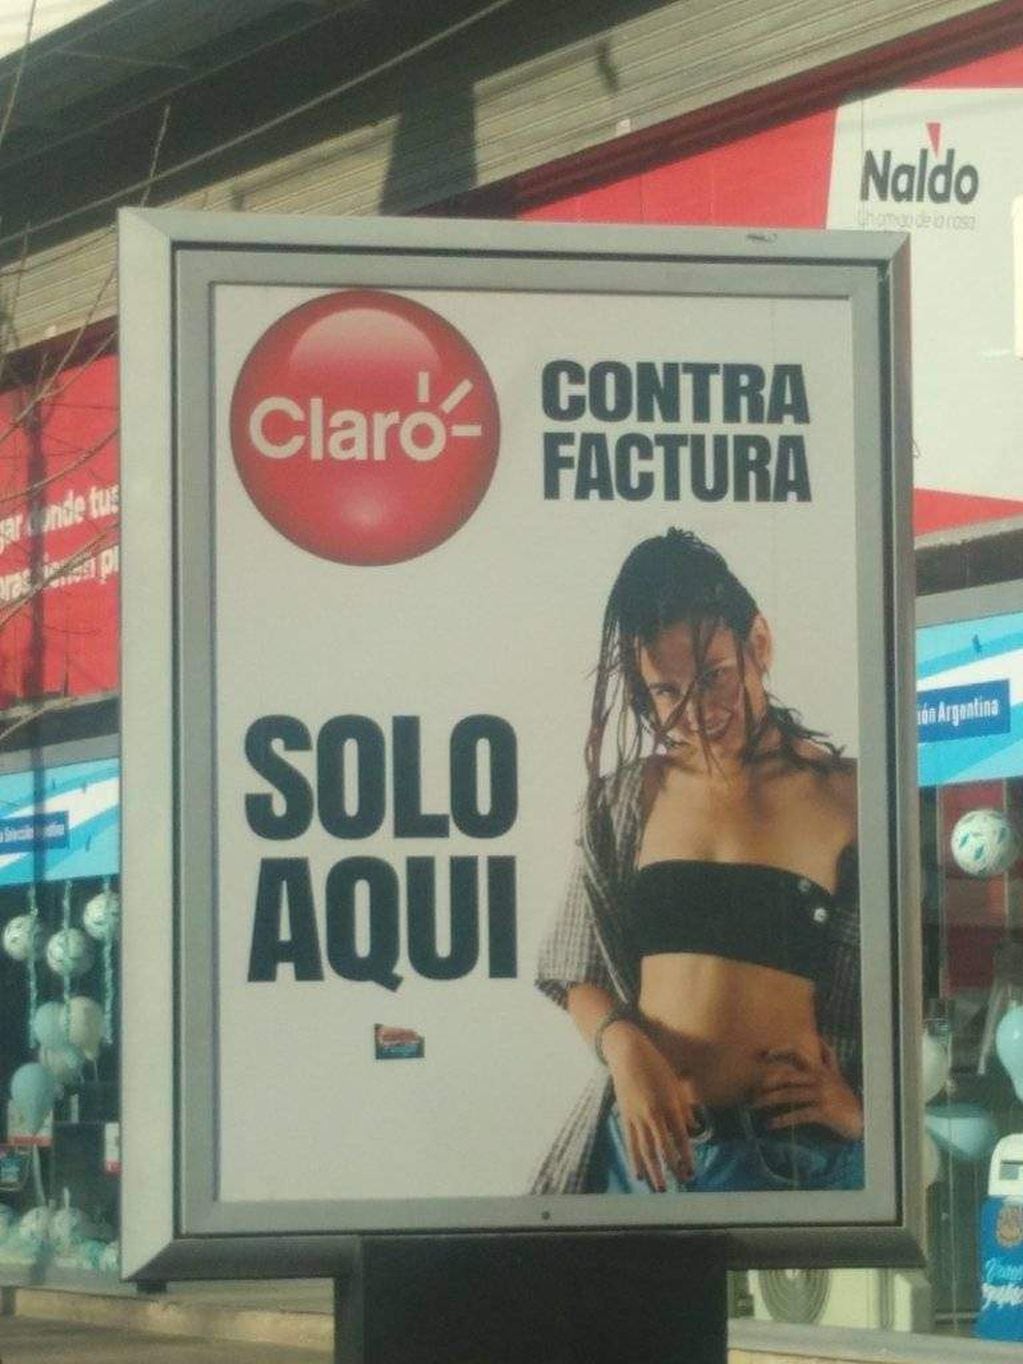 La publicidad sexista de Claro que circula por las calles de Tunuyán.